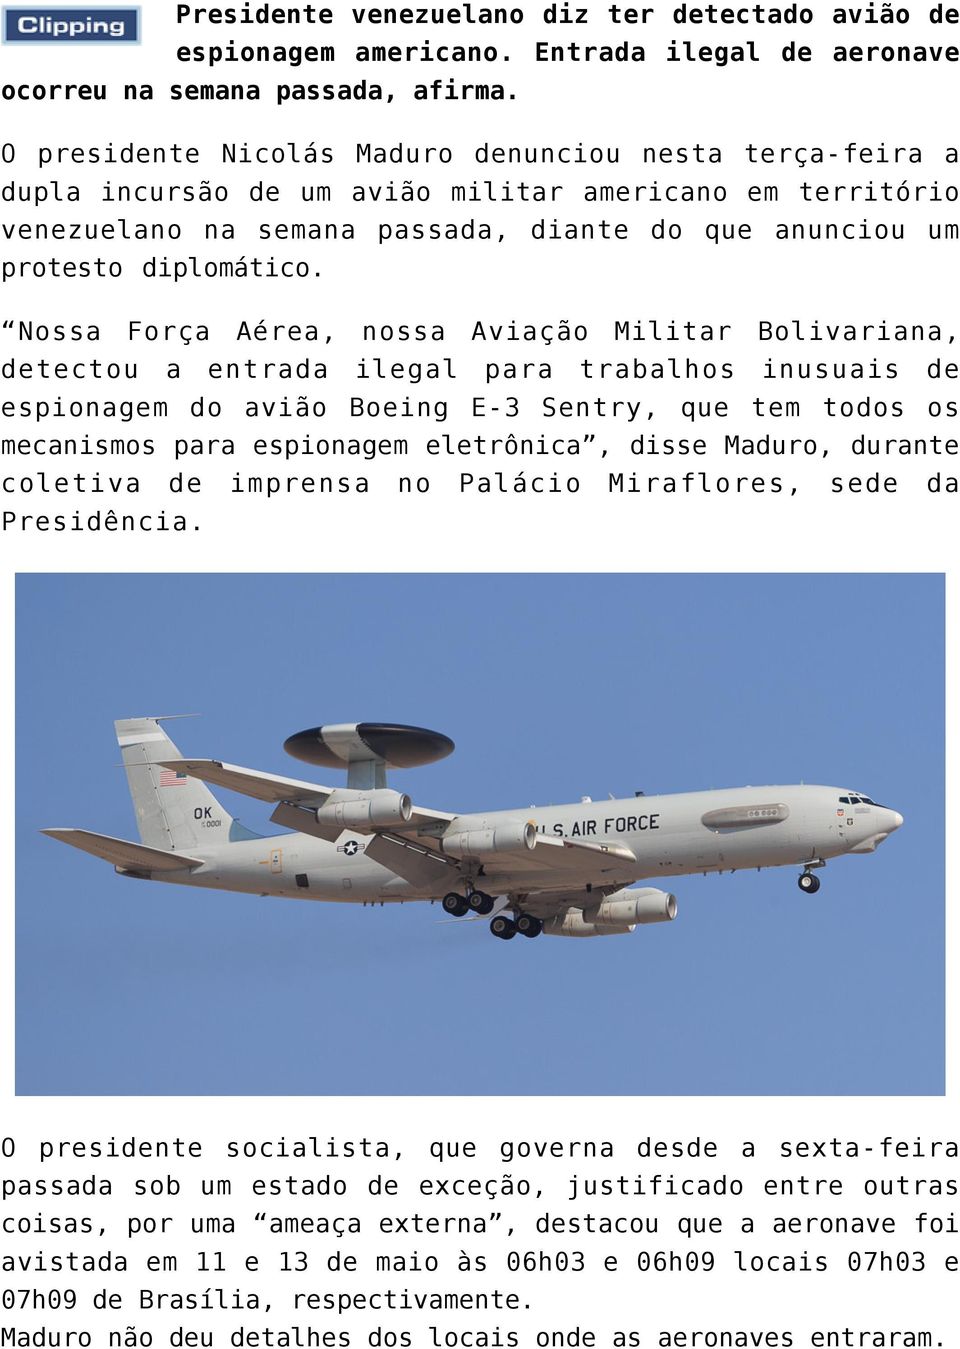 Nossa Força Aérea, nossa Aviação Militar Bolivariana, detectou a entrada ilegal para trabalhos inusuais de espionagem do avião Boeing E-3 Sentry, que tem todos os mecanismos para espionagem